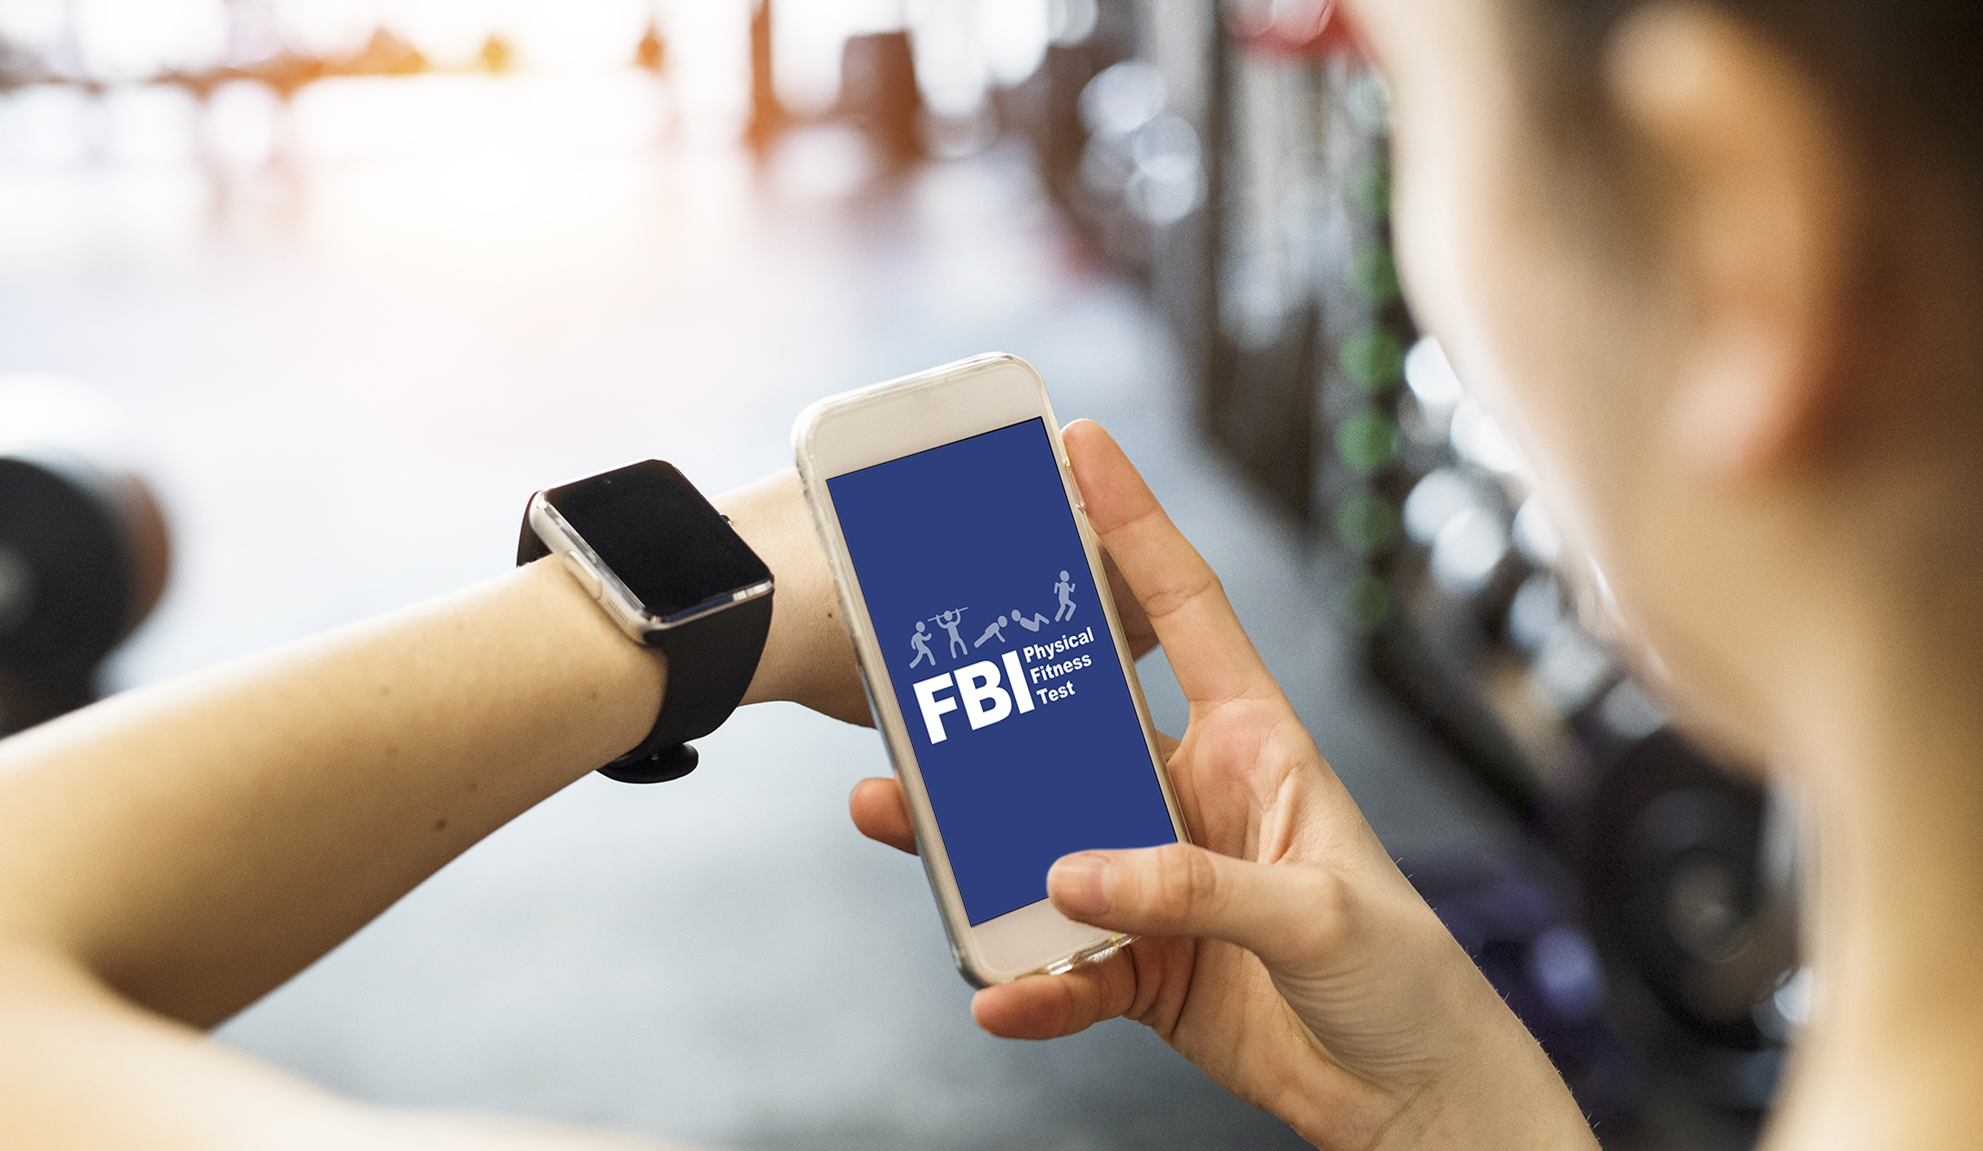 FBI Physical Fitness Test App — FBI